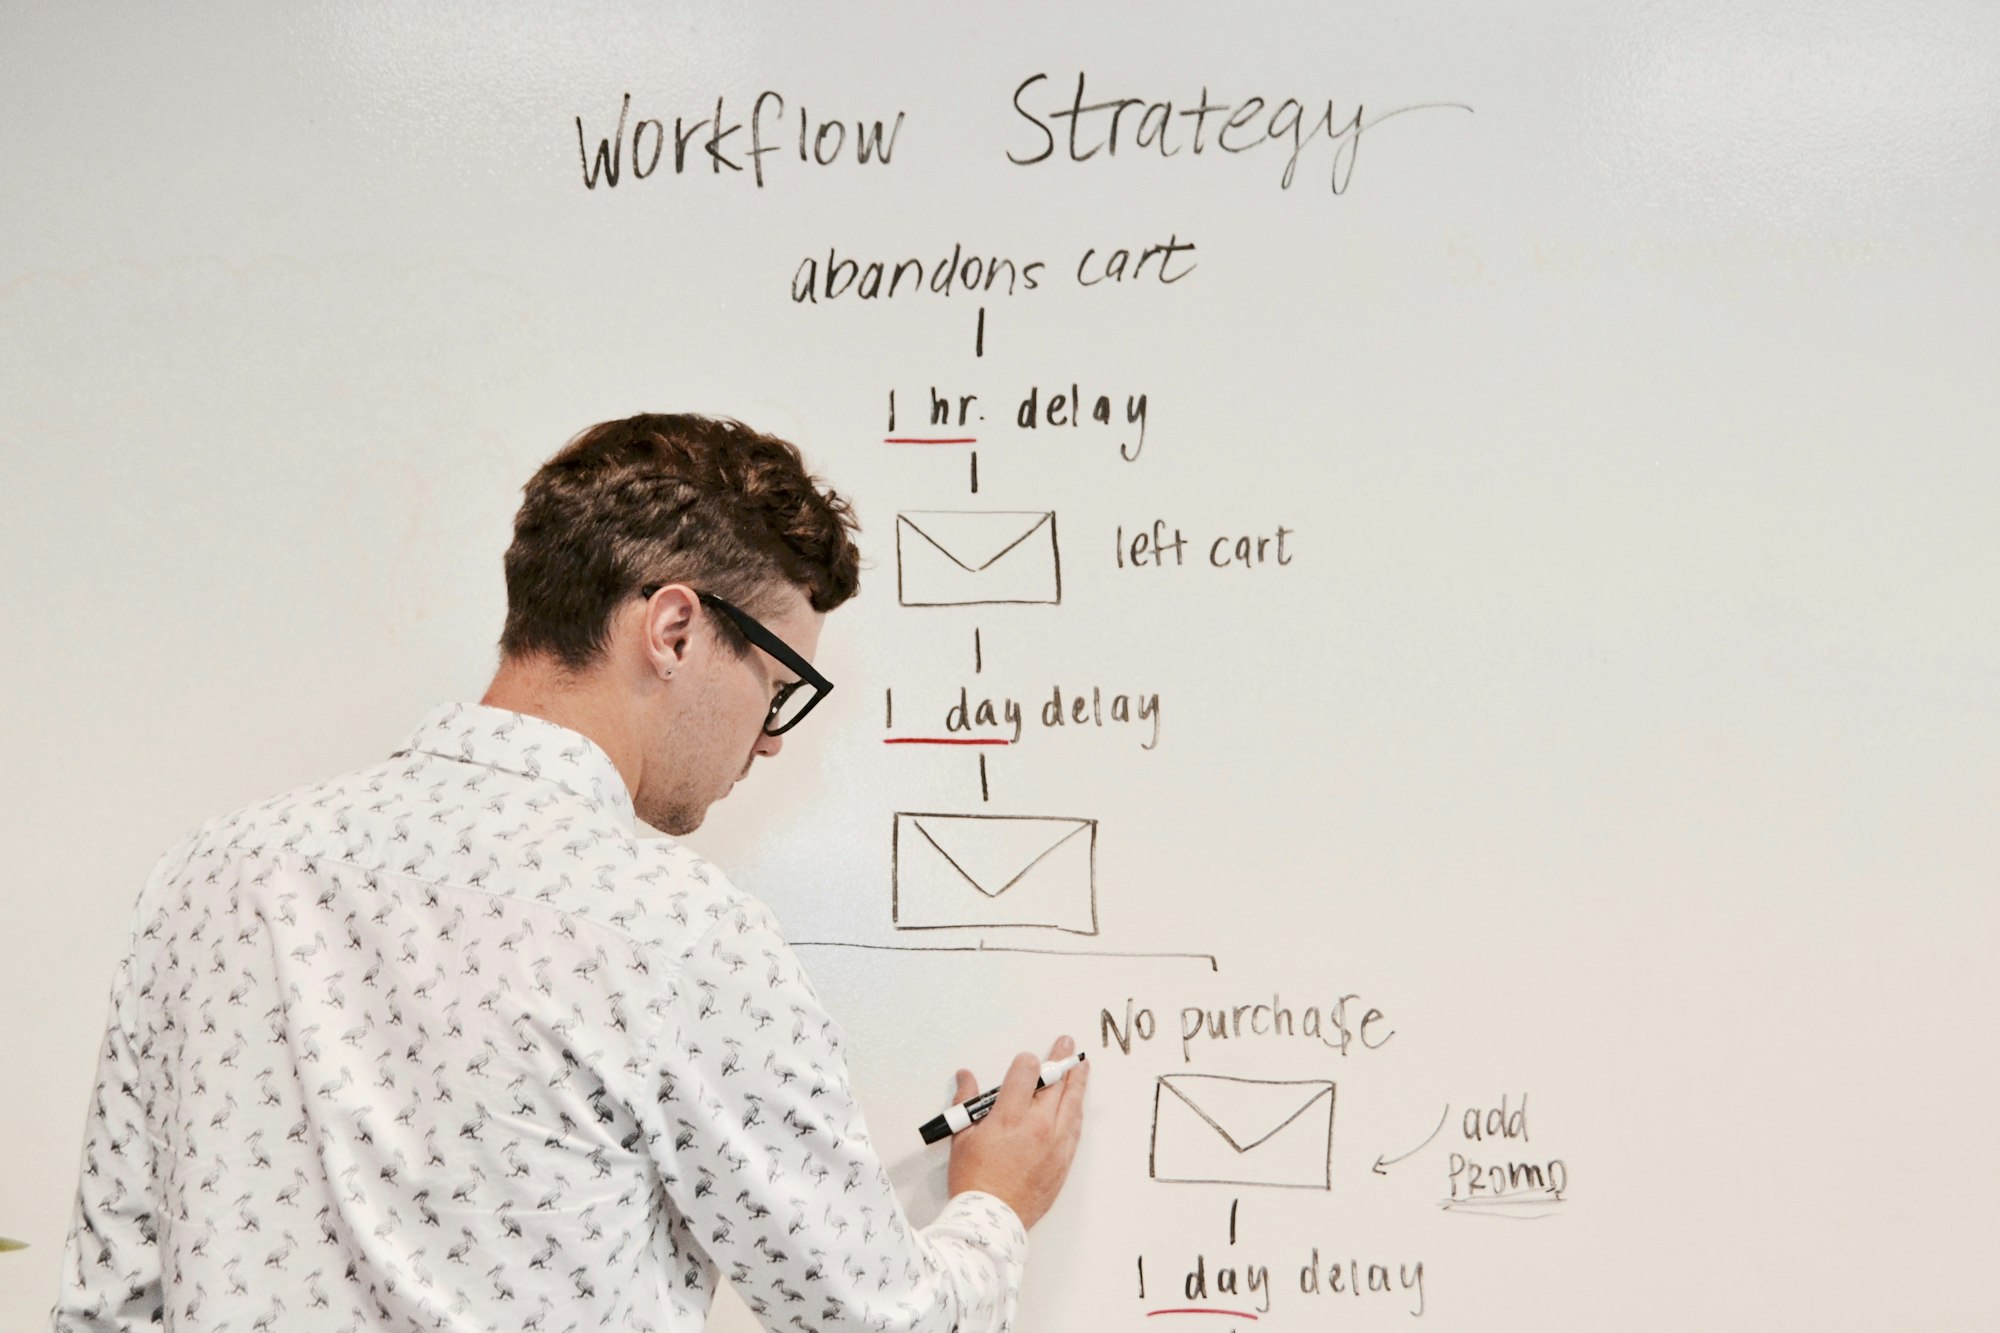 Marketing workflow strategy